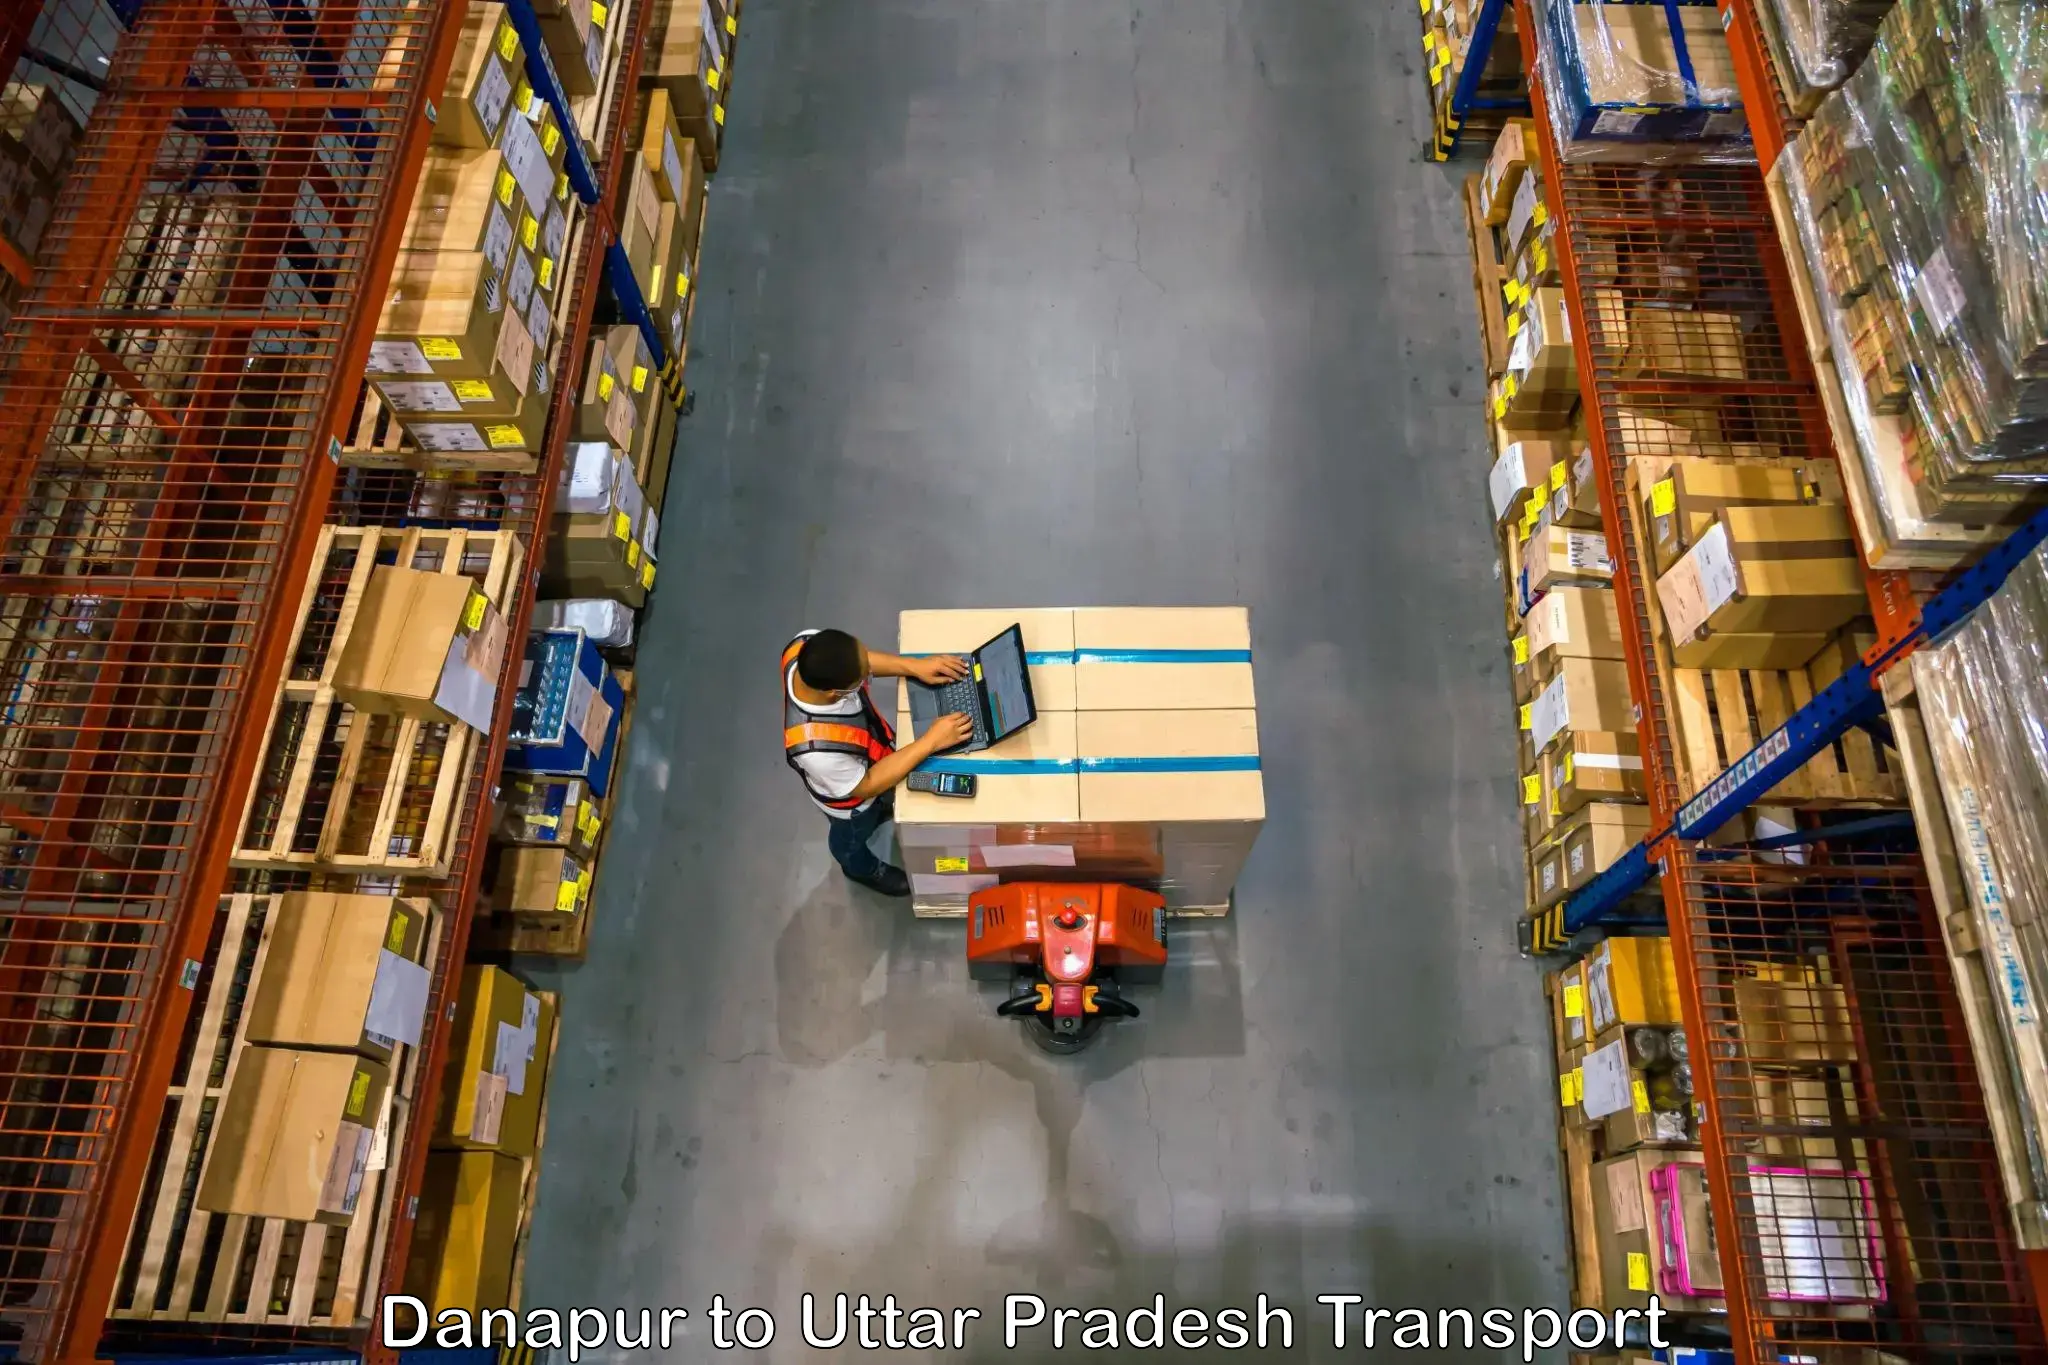 Delivery service Danapur to Chandpur